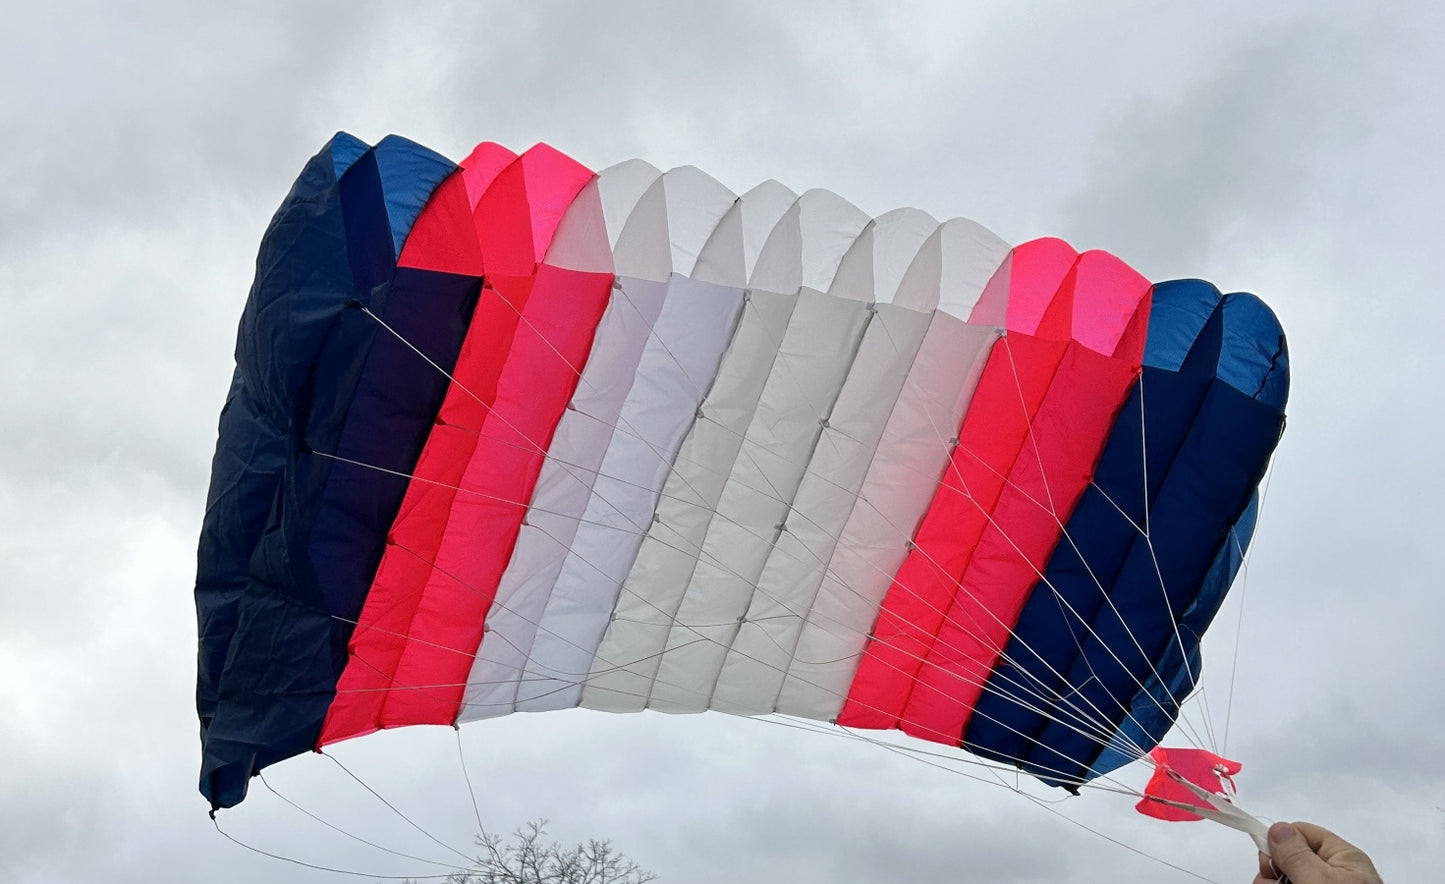 Hangtime Ultimate Parachute - 1 time color scheme - blue/watermelon/white